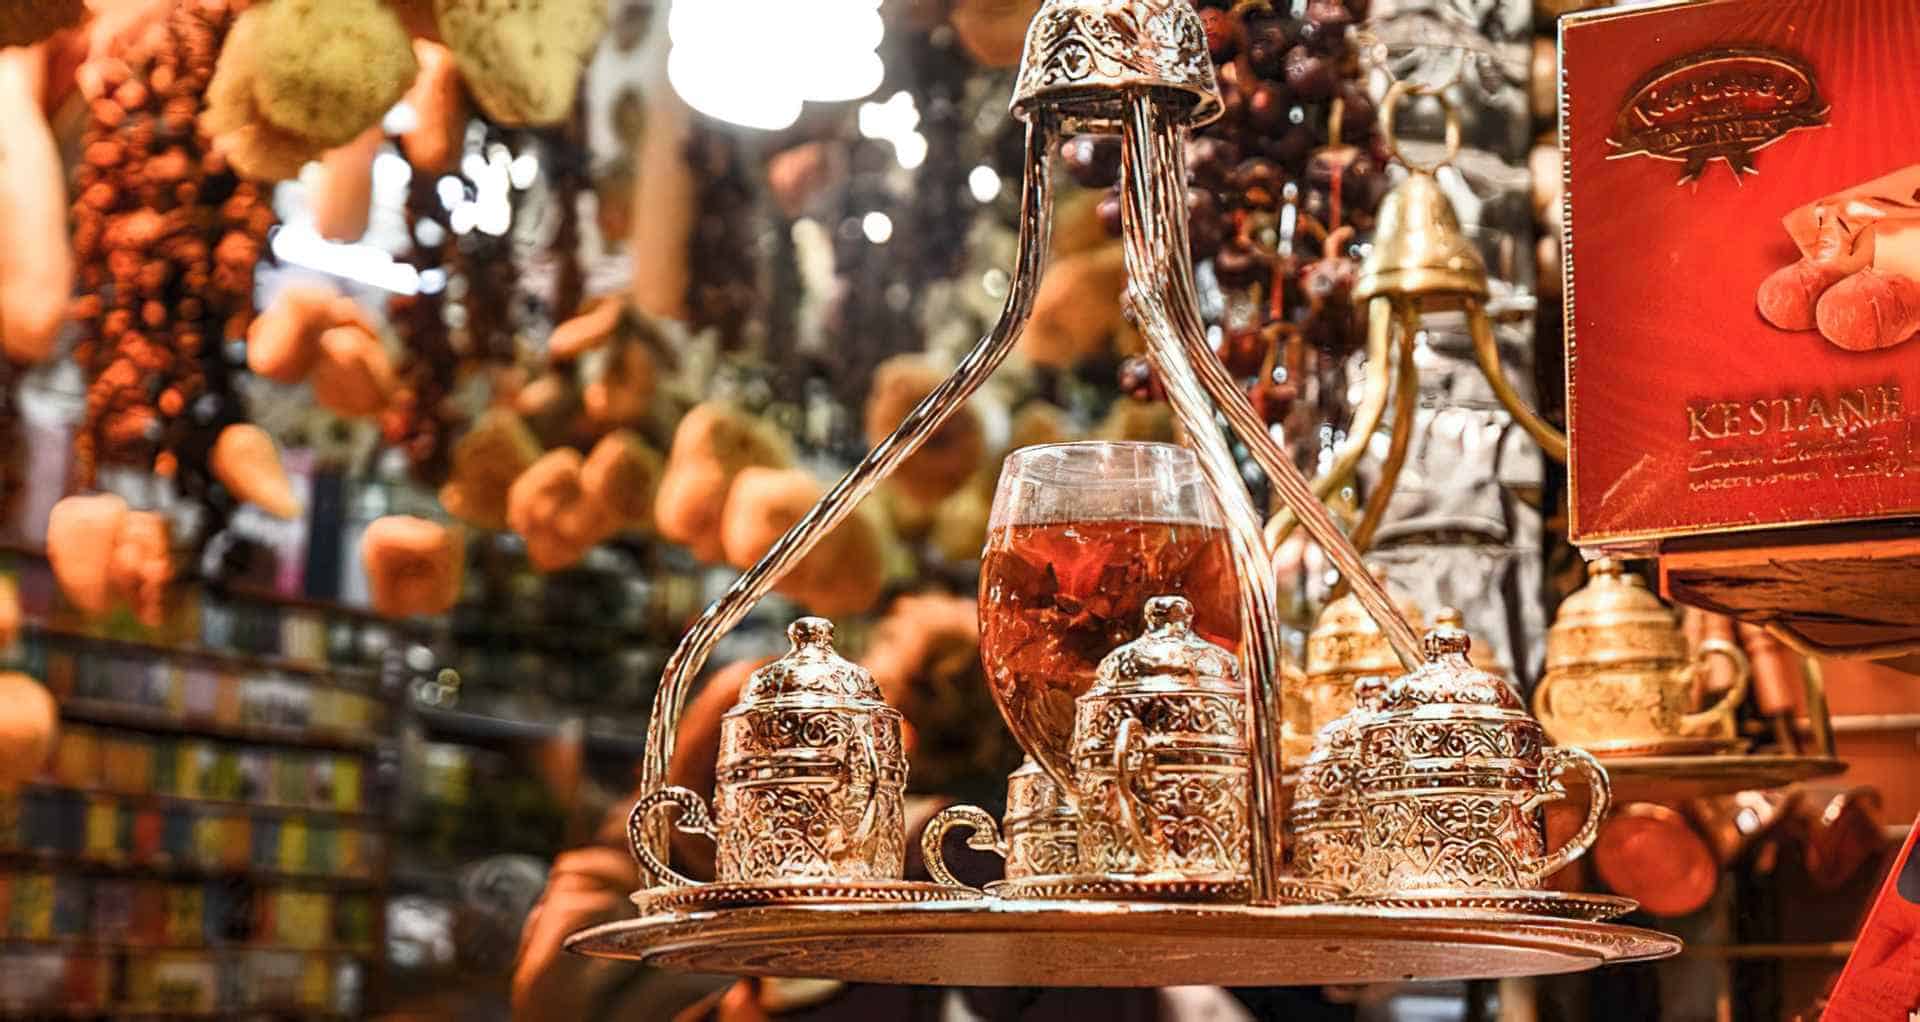 Compras Estambul: Bazares, imitaciones y precios